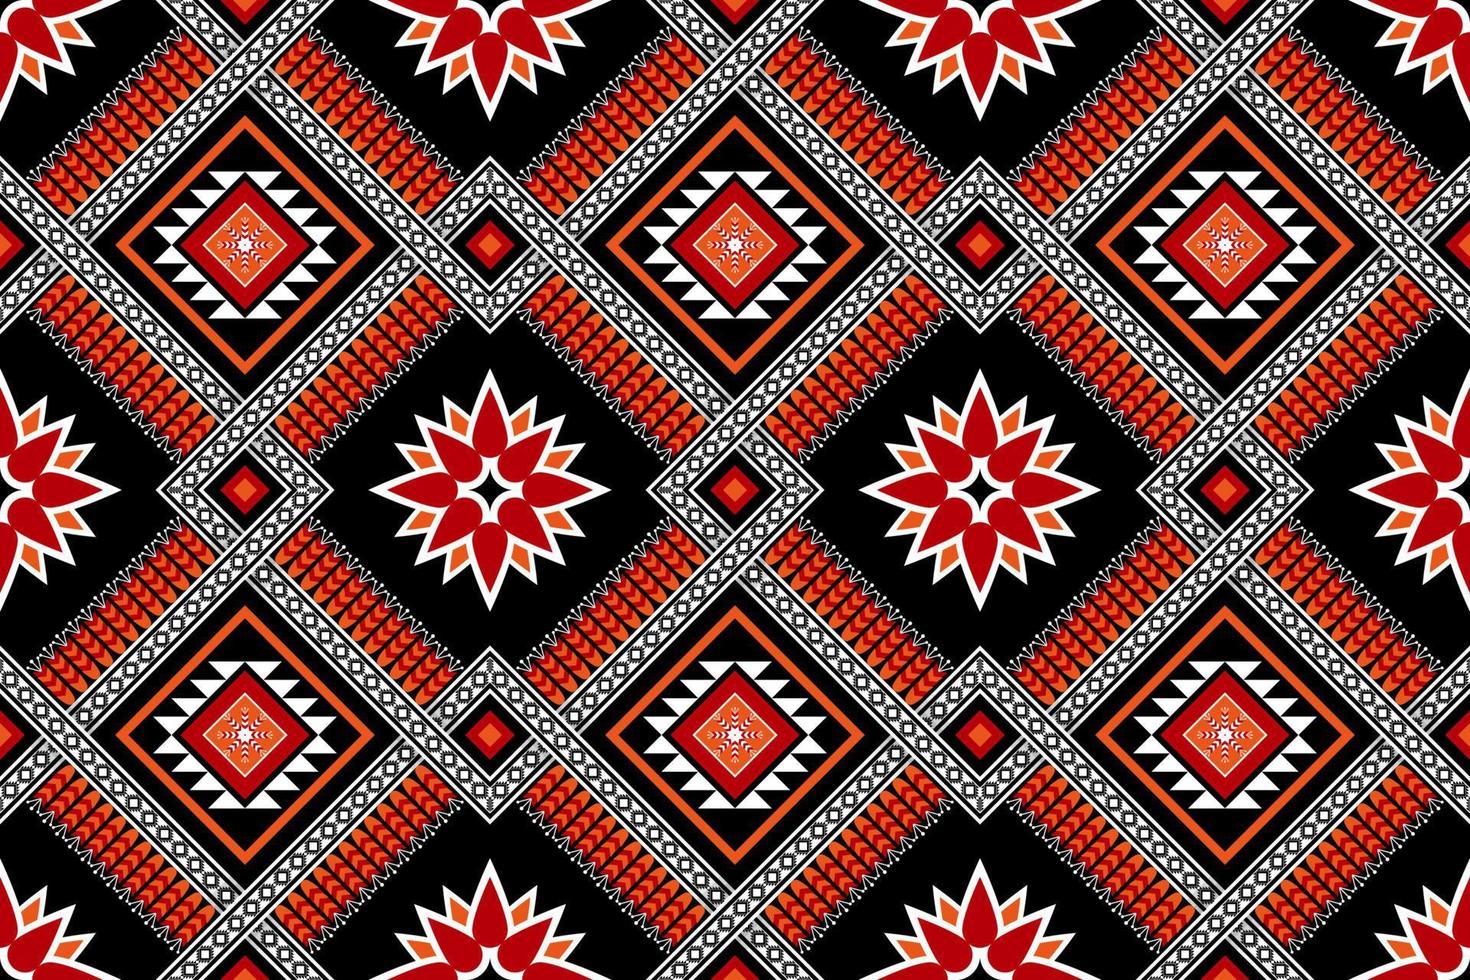 geometriska etniska sömlösa mönster traditionella. blomdekoration. design för bakgrund, matta, tapeter, kläder, inslagning, batik, tyg, vektor, illustration, broderi. vektor